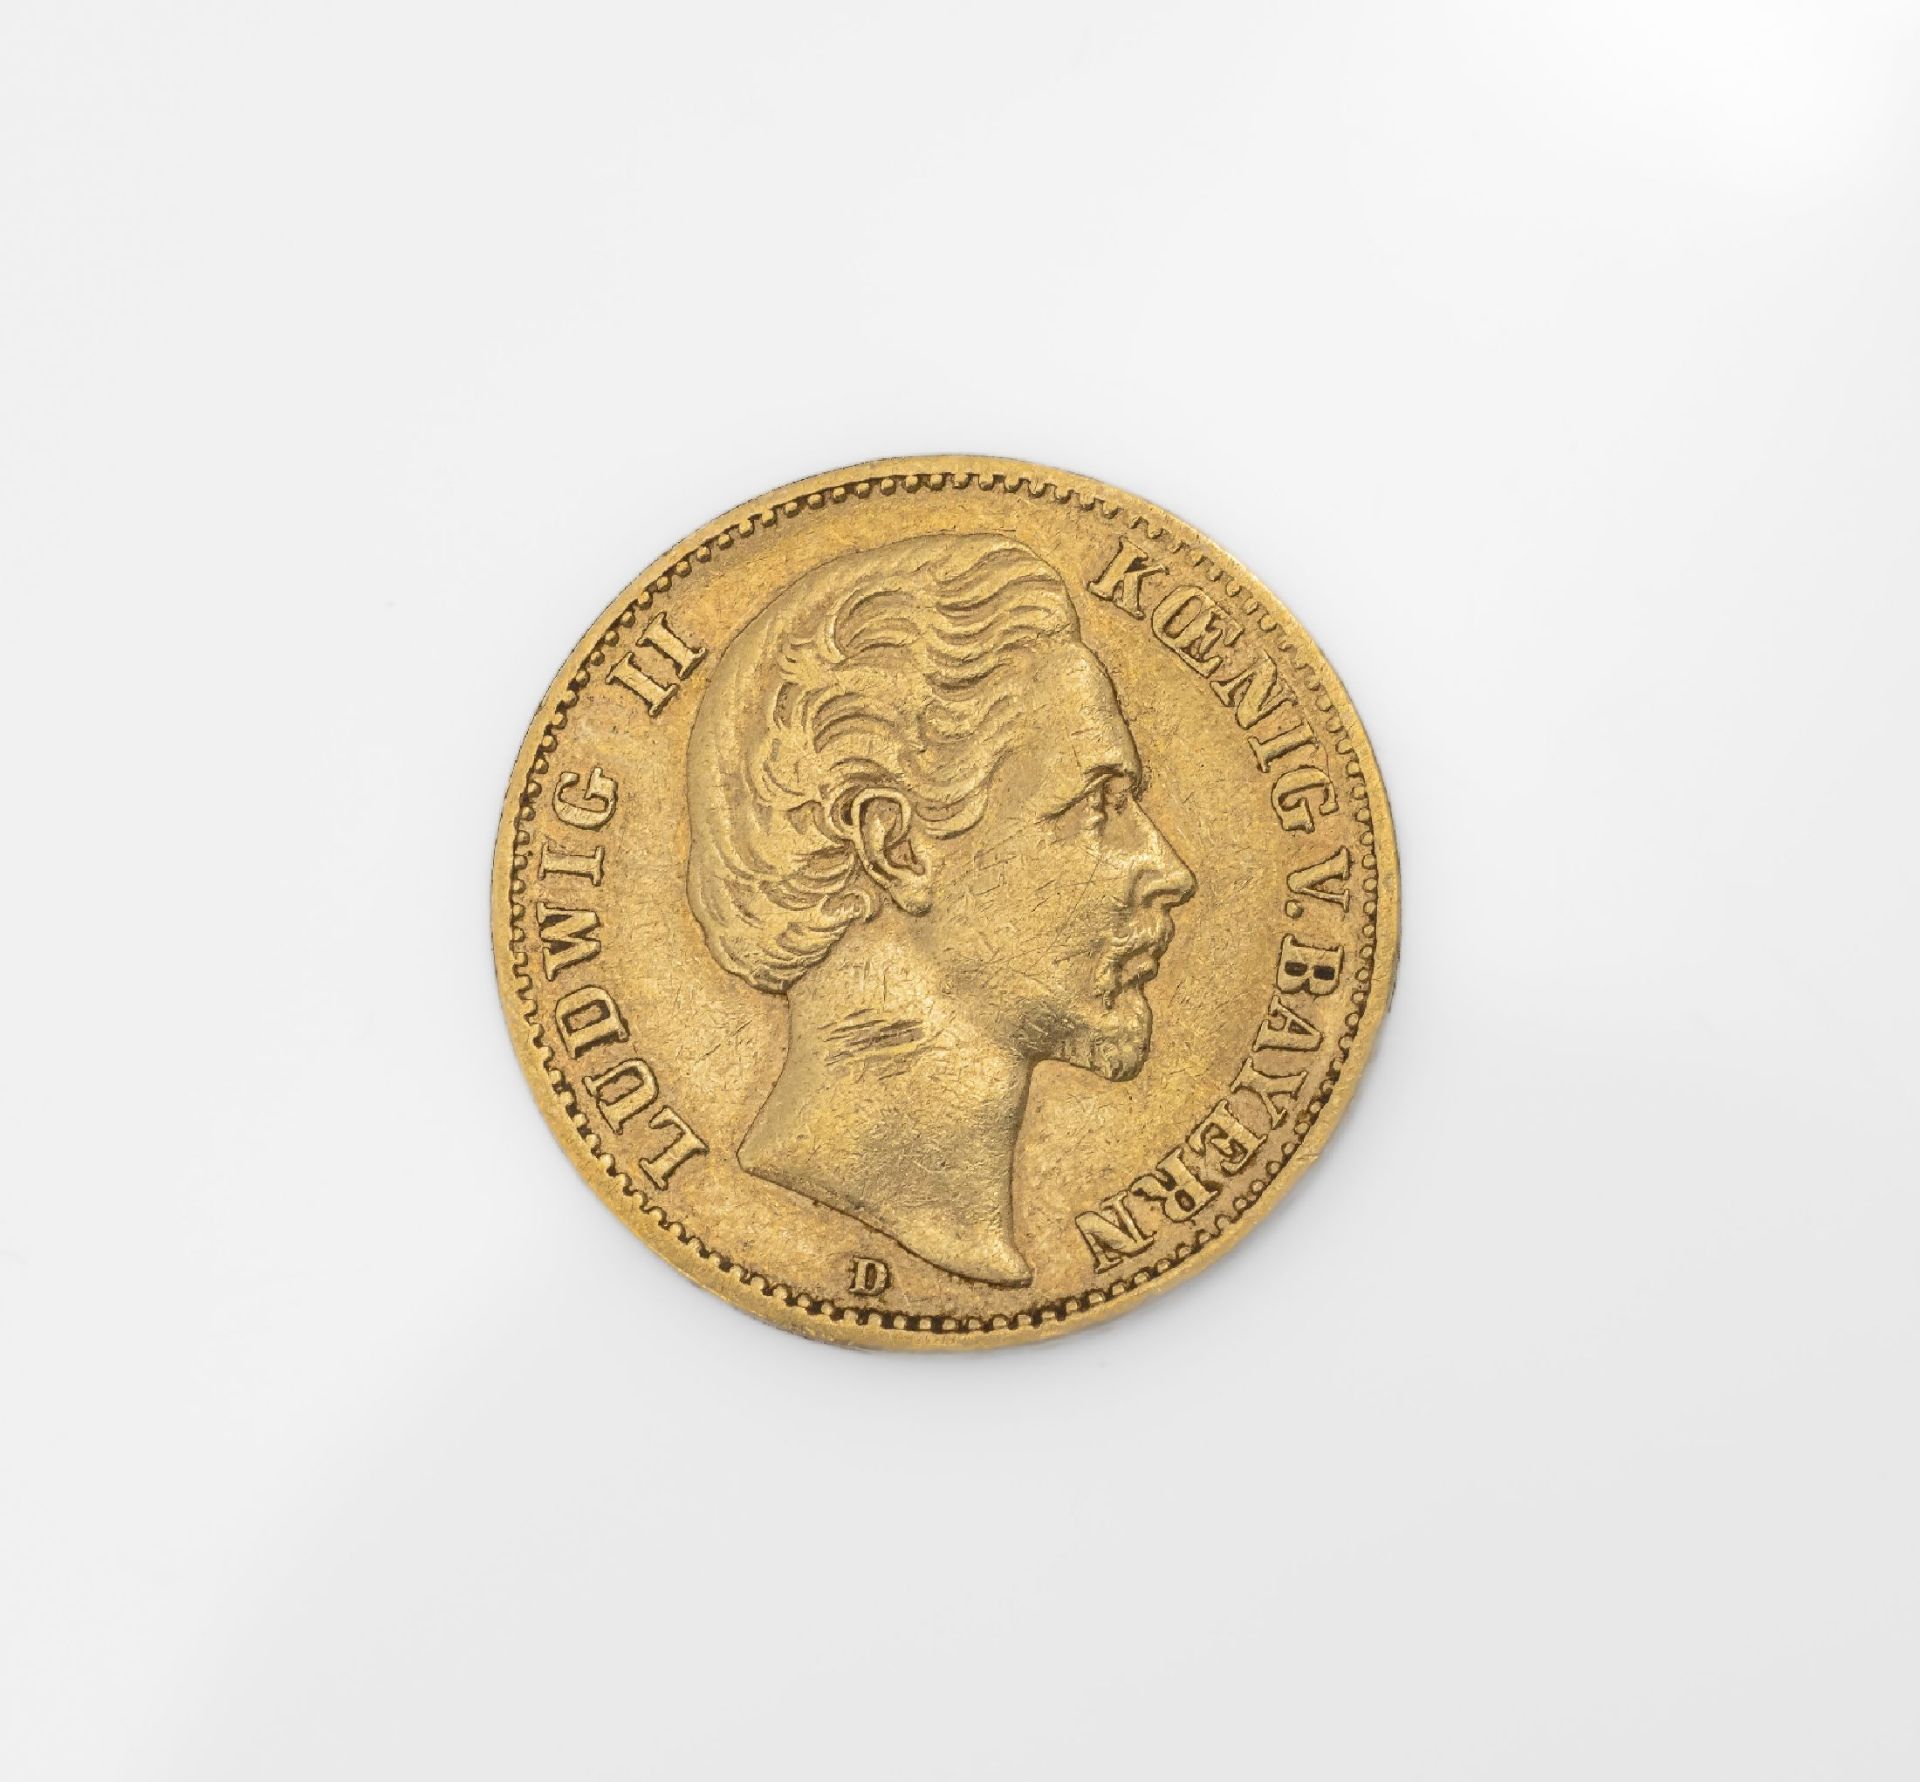 Goldmünze 10 Mark Deutsches Reich 1872, Ludwig II. König